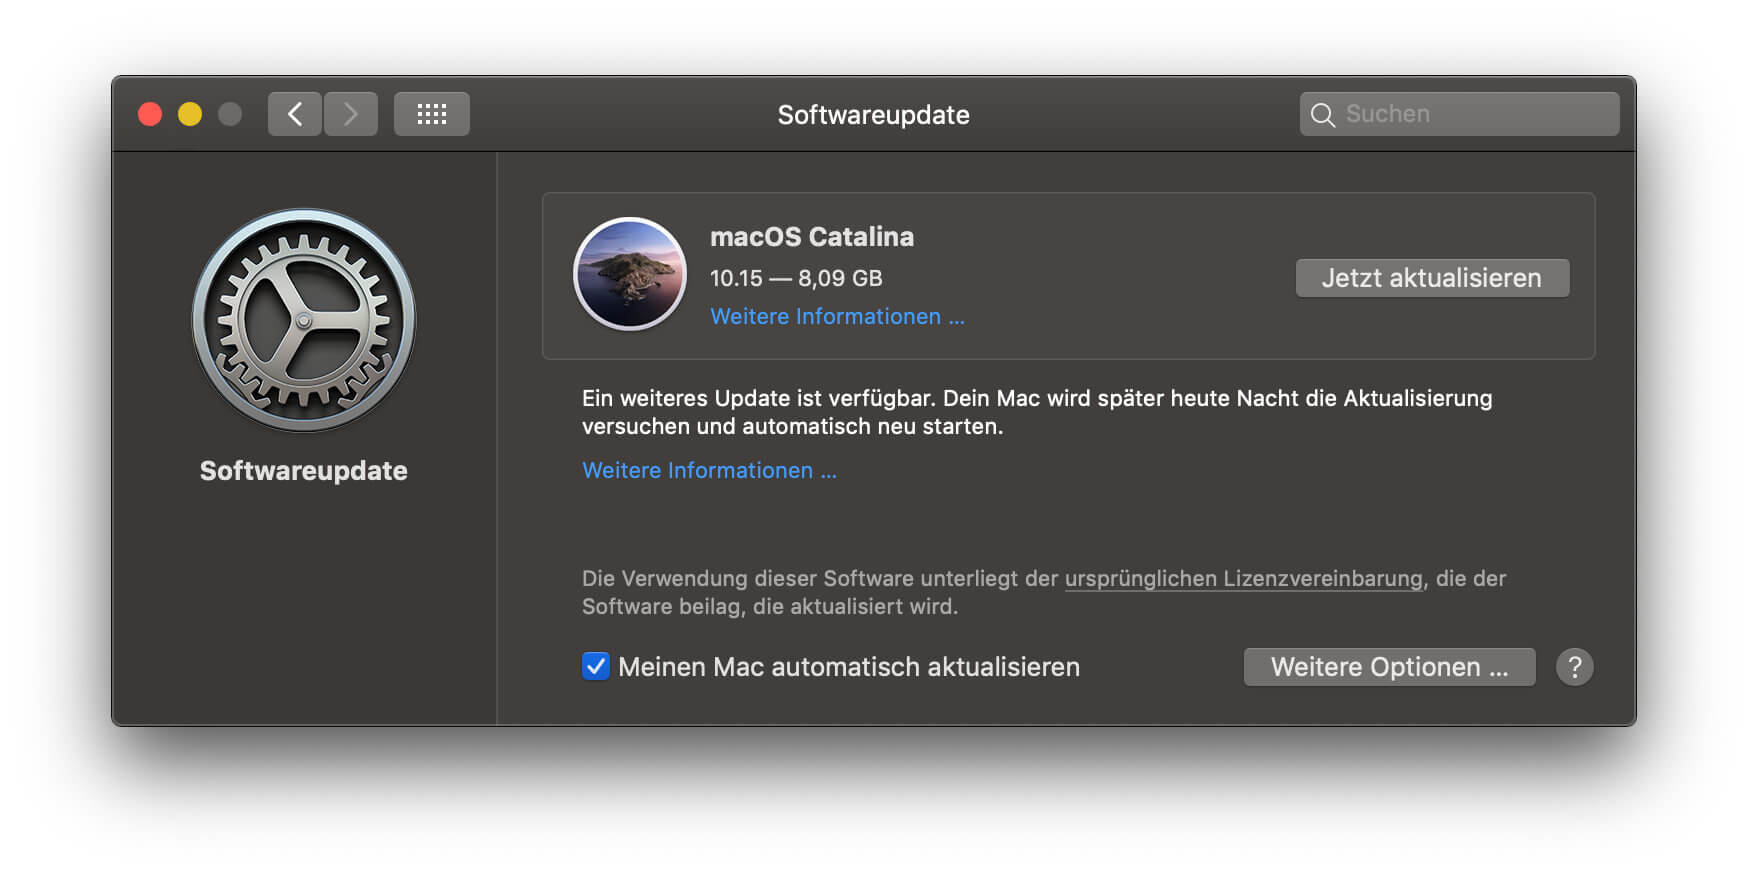 Führen Sie das macOS Catalina Update über den Mac App Store oder die Systemeinstellungen aus.
Beachten Sie, dass das Update einige Zeit in Anspruch nehmen kann. Haben Sie Geduld und unterbrechen Sie den Vorgang nicht.